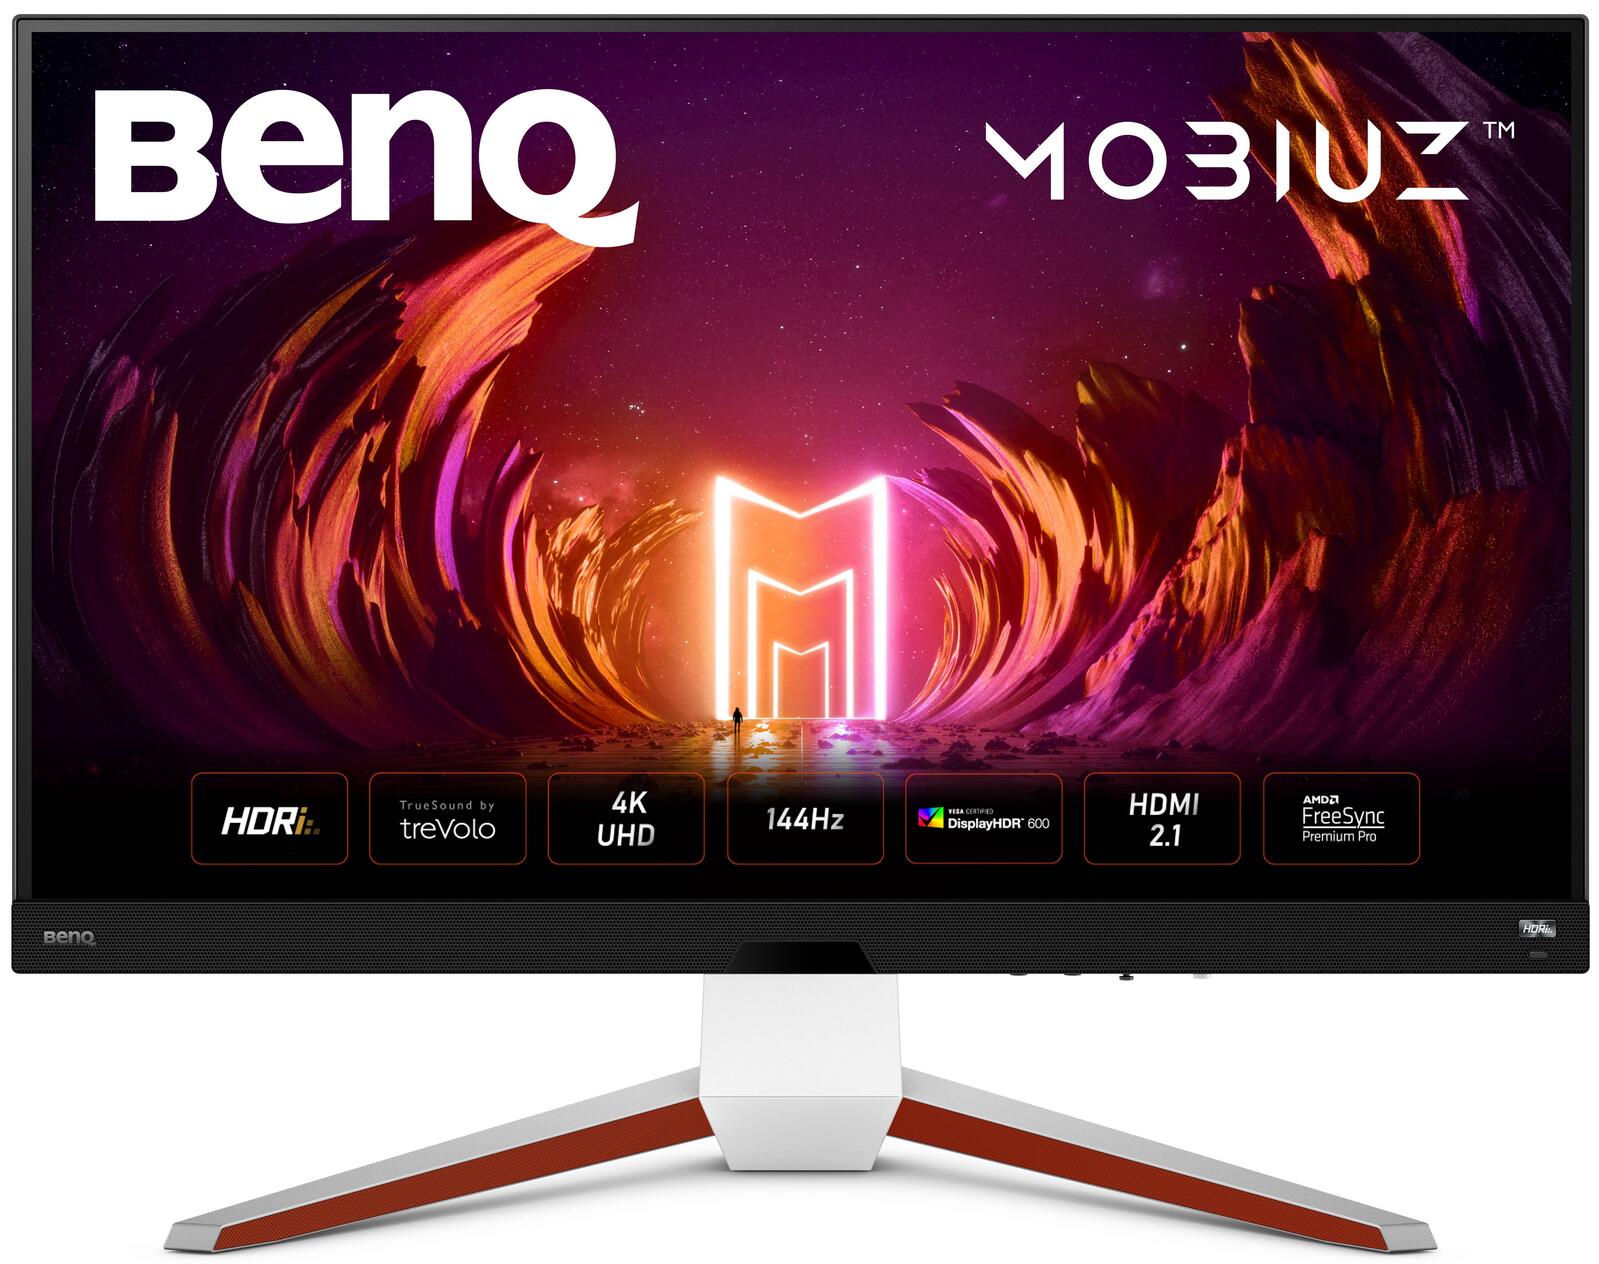 BenQ MOBIUZ EX3210U monitors